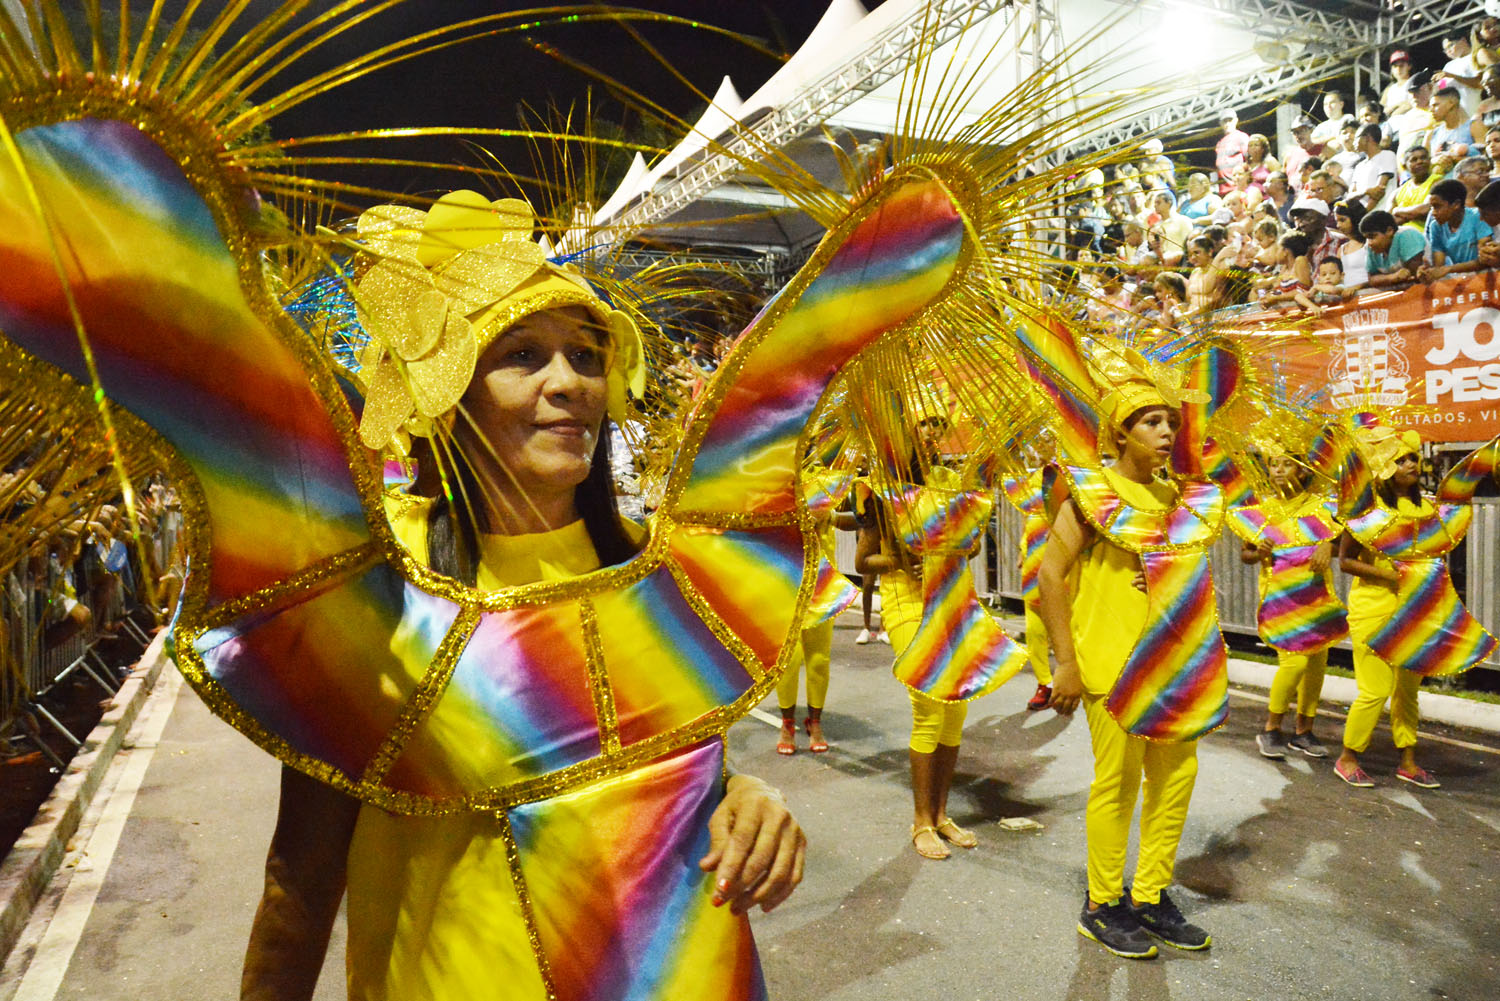 Agremiações chamam atenção pela beleza e requinte de fantasias e adereços no "Carnaval Tradição" de João Pessoa